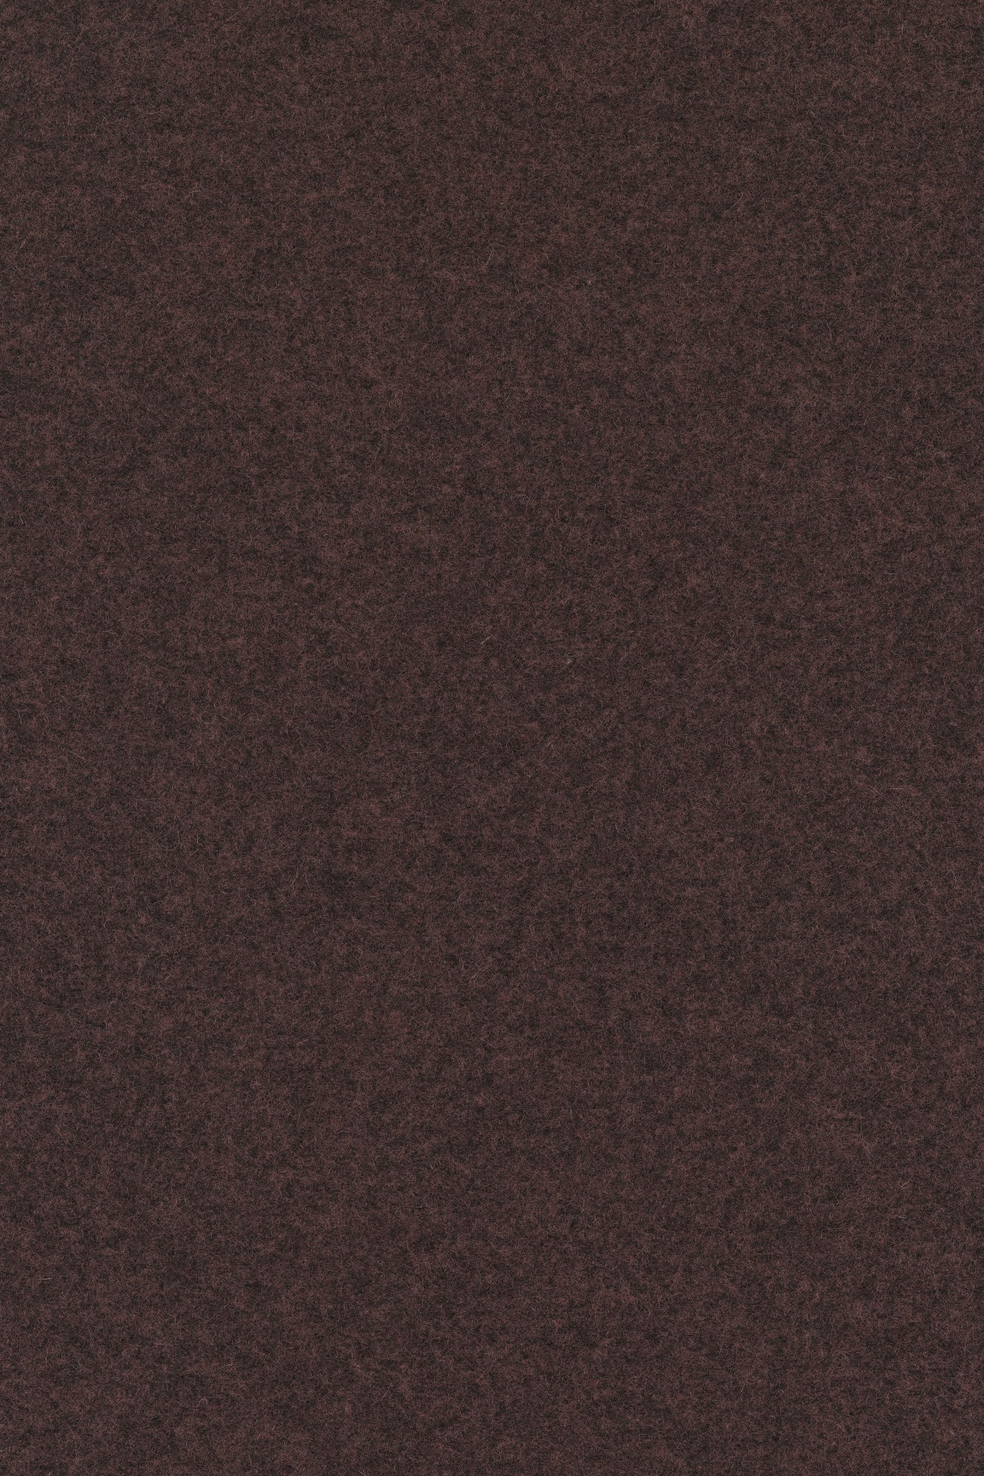 Fabric sample Divina Melange 3 677 brown